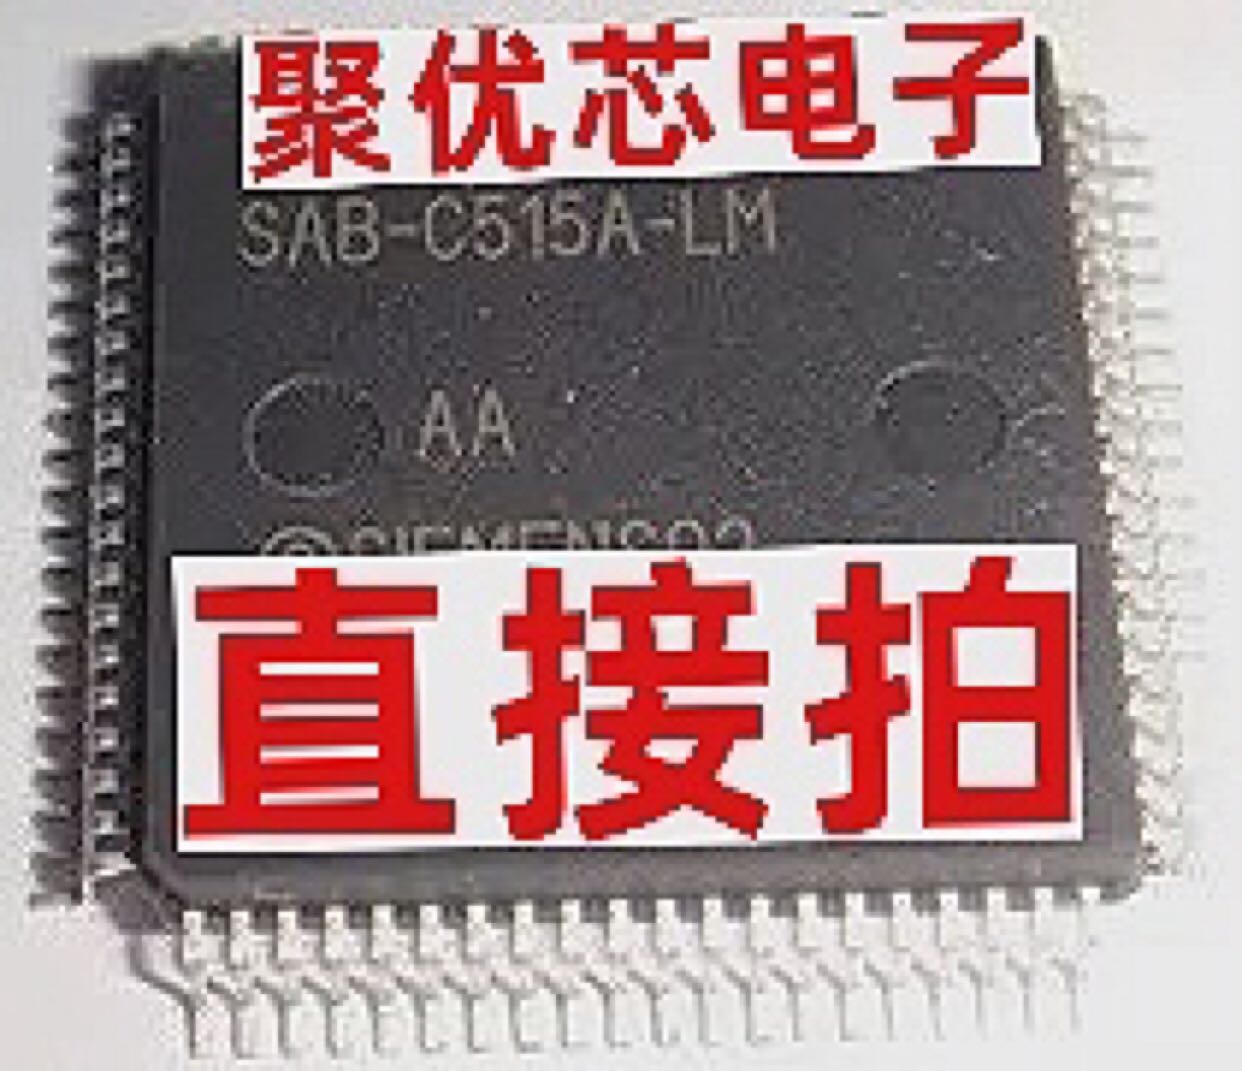 SAB-C515A-LM SAF-C515A-LM SAB-C515A C515A